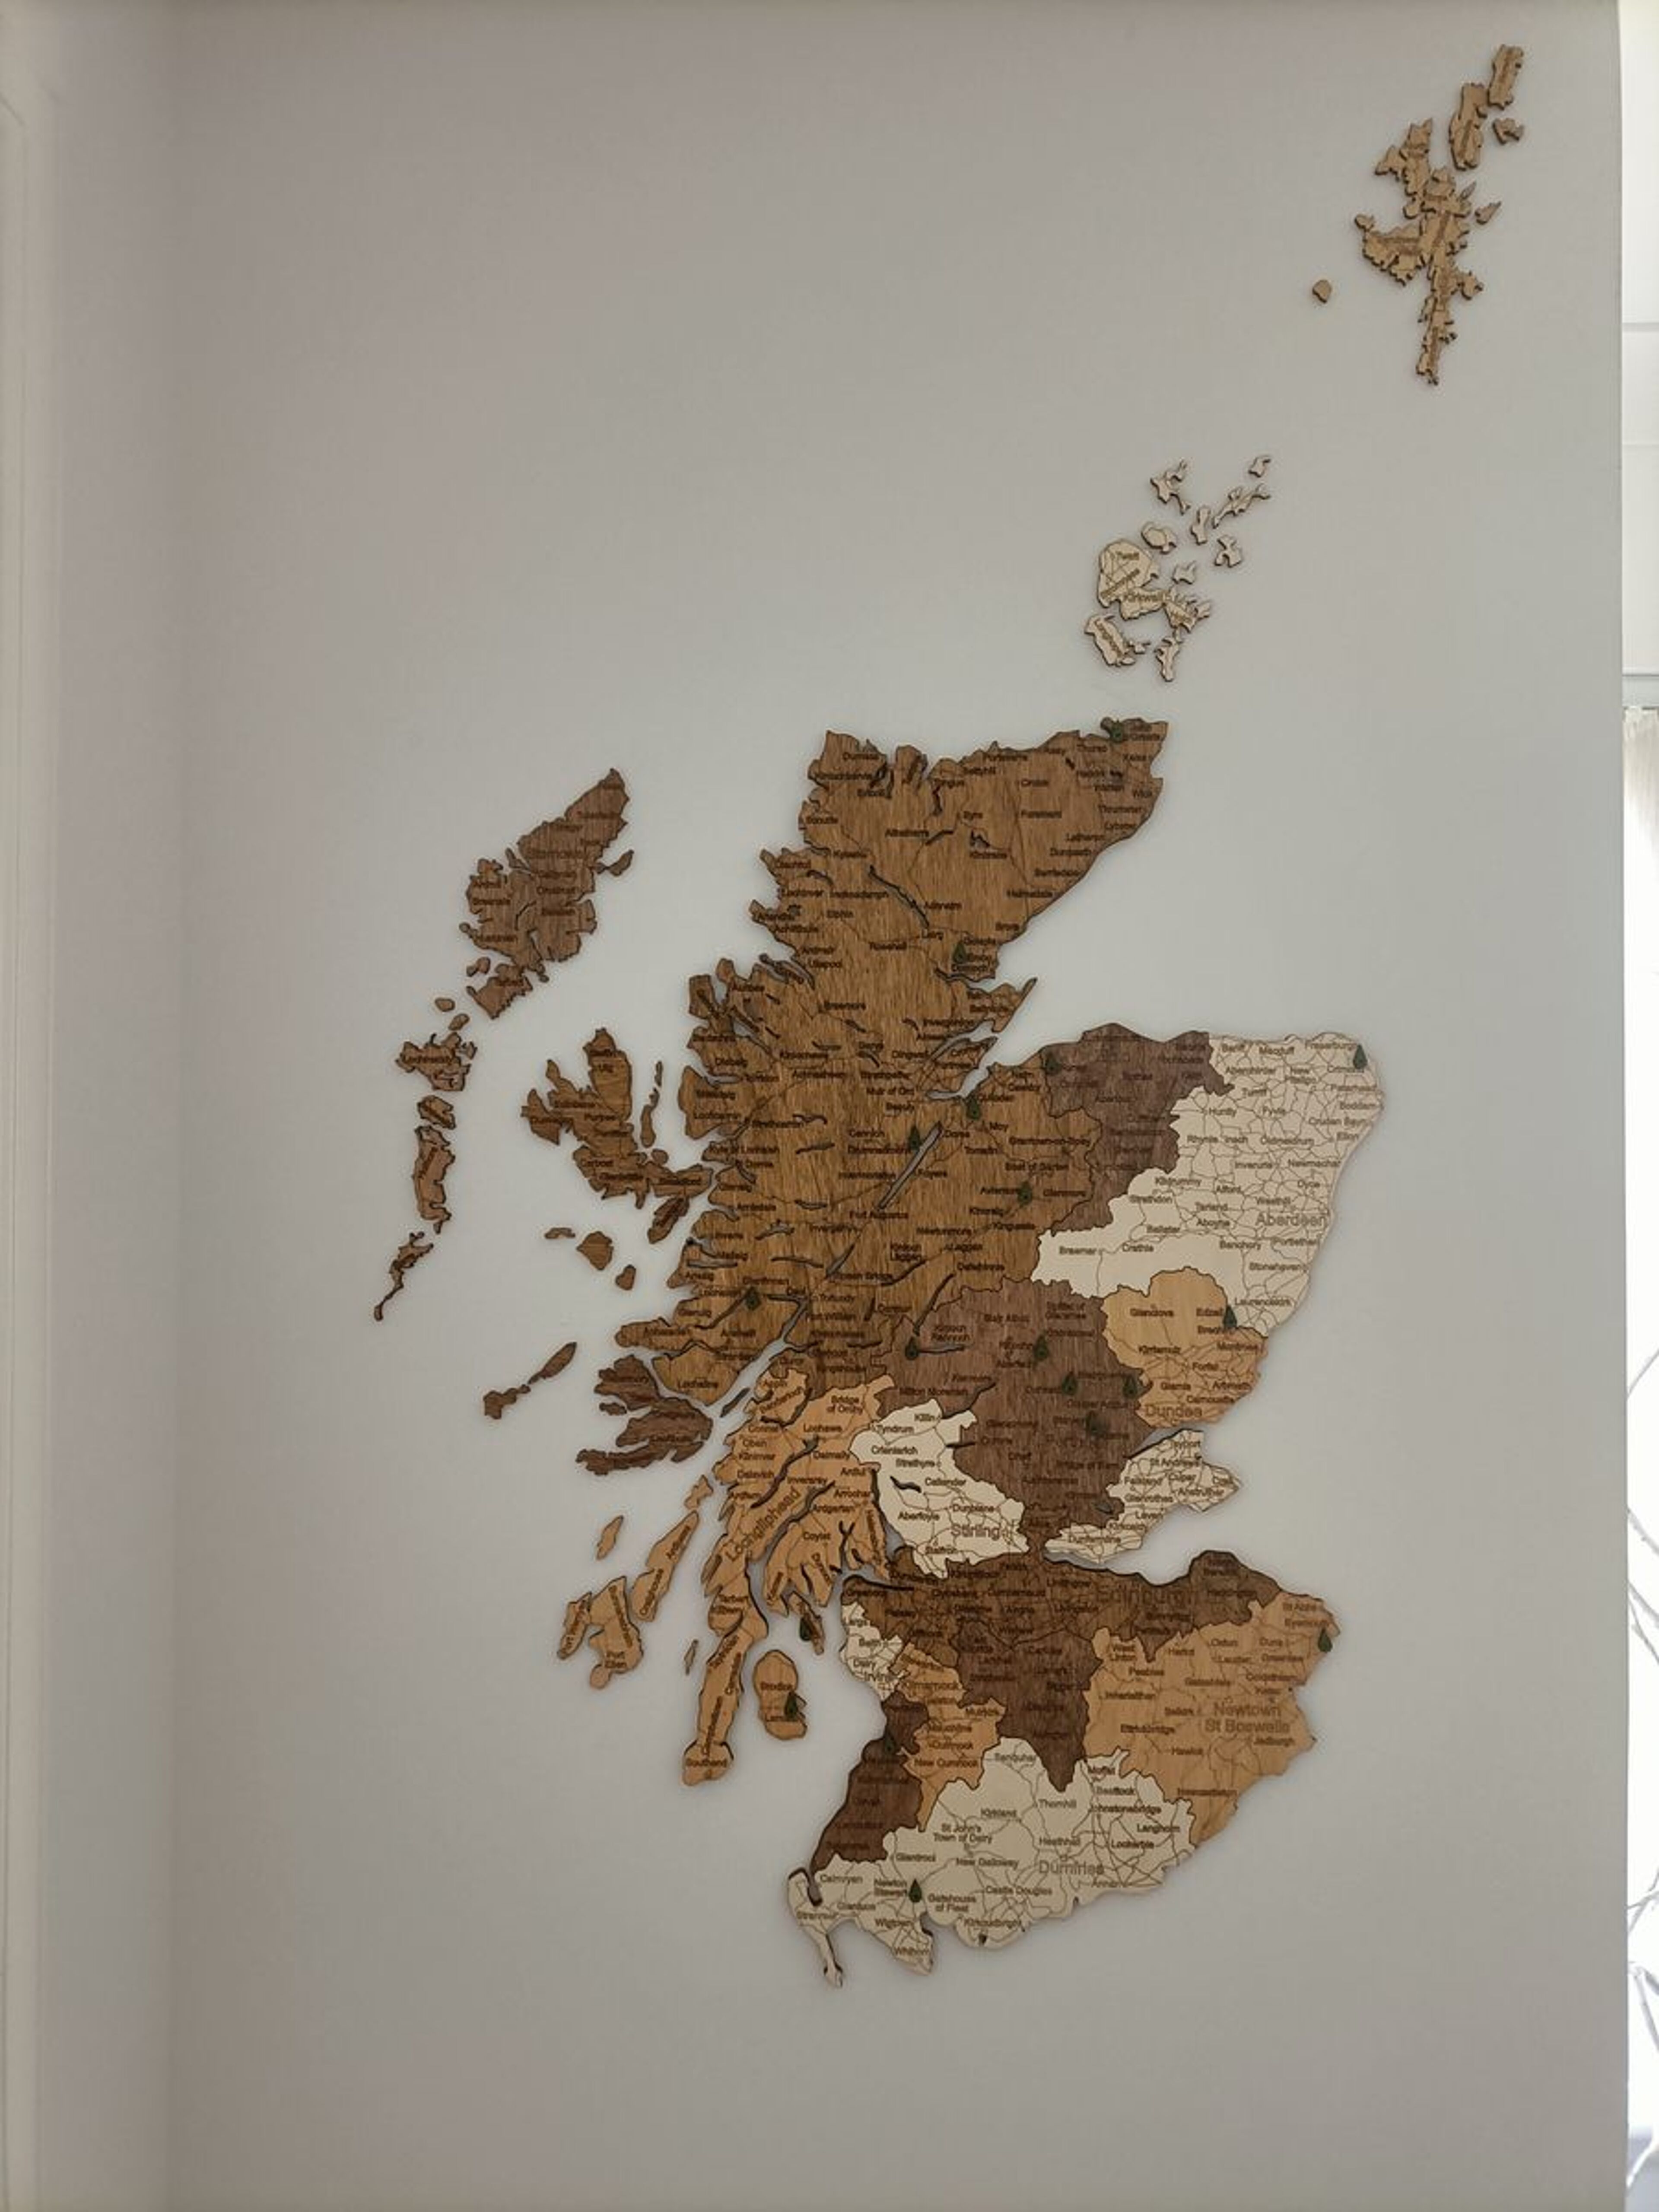 Recensione per Mappa della Scozia in legno - immagine da Lesley F.